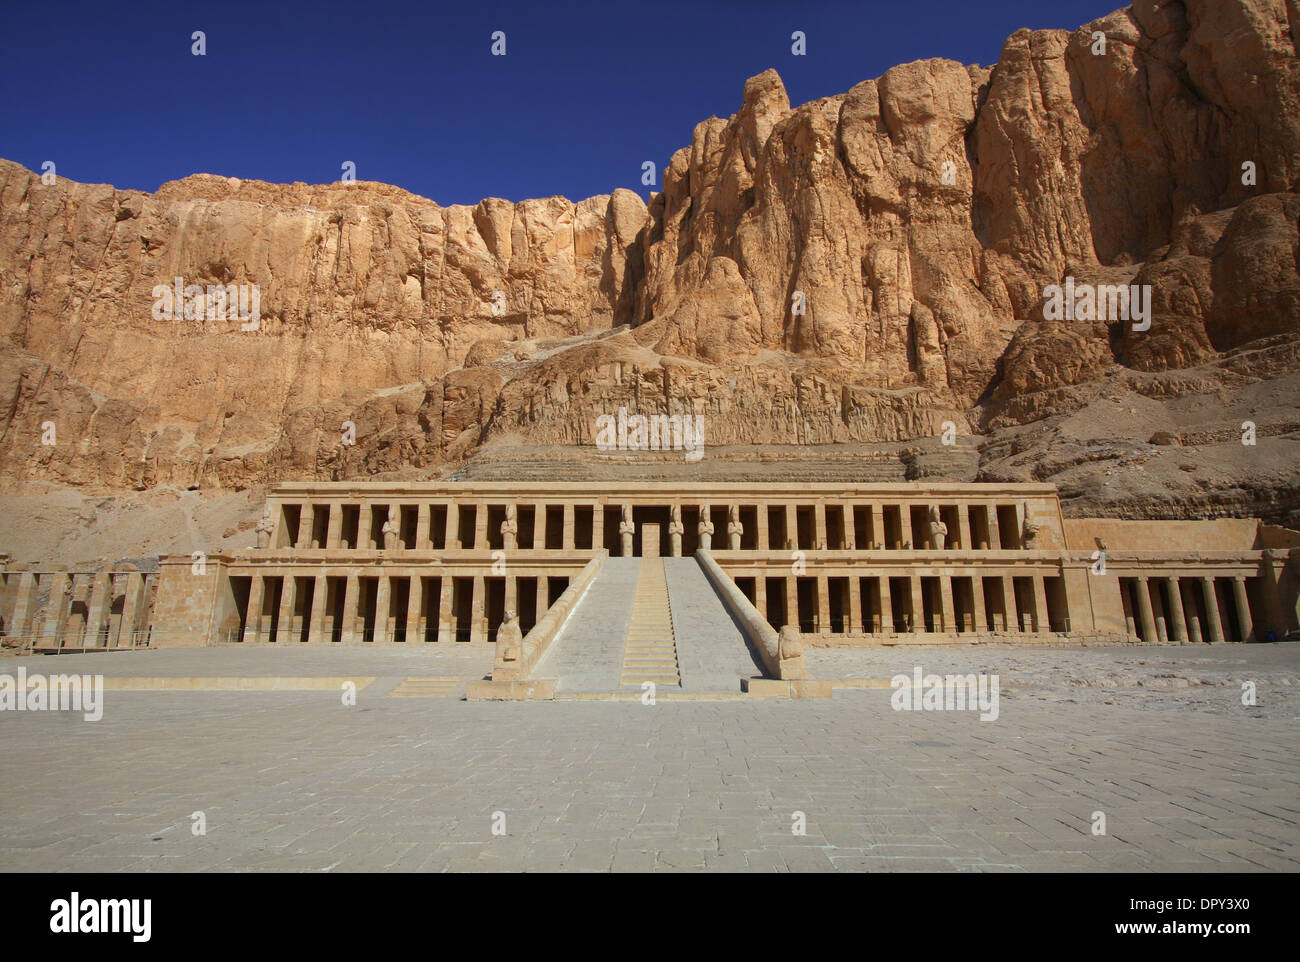 Il tempio di Hatshepsut nella Valle dei Re nei pressi di Luxor in Egitto Foto Stock